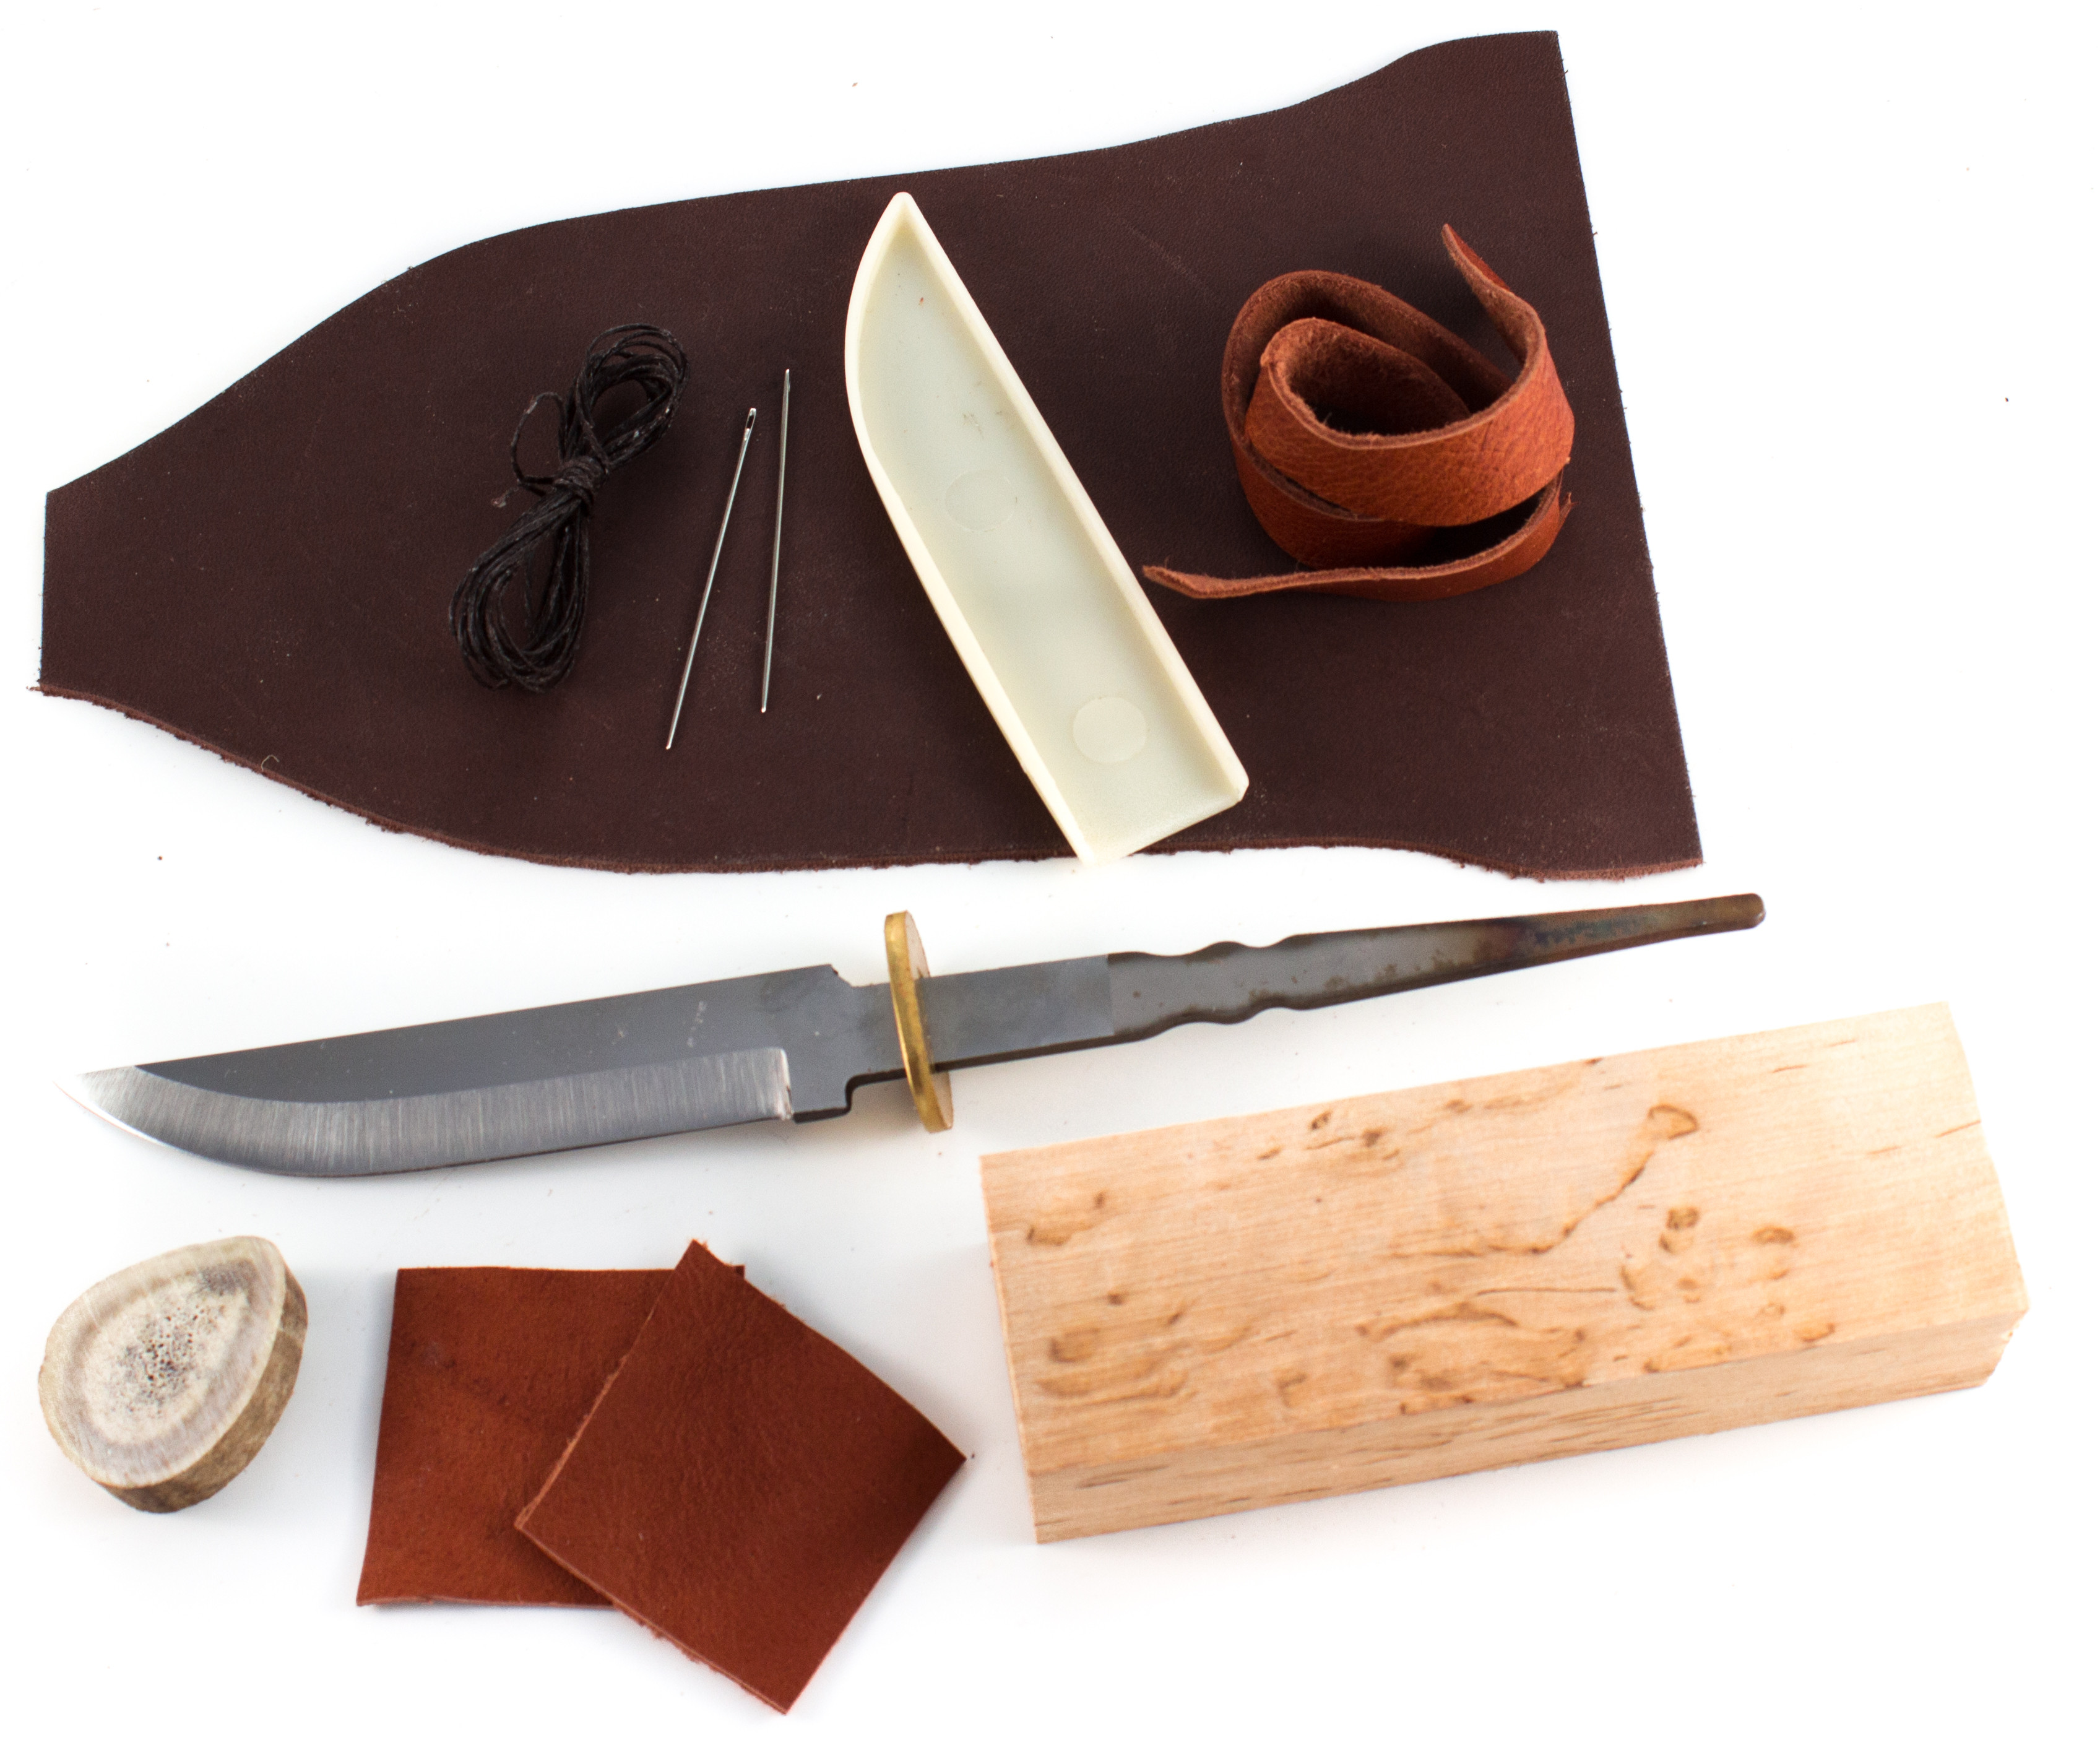 Nordisches Handwerk
 Bausatz für rostfreies Nordisches Messer und Lederscheide